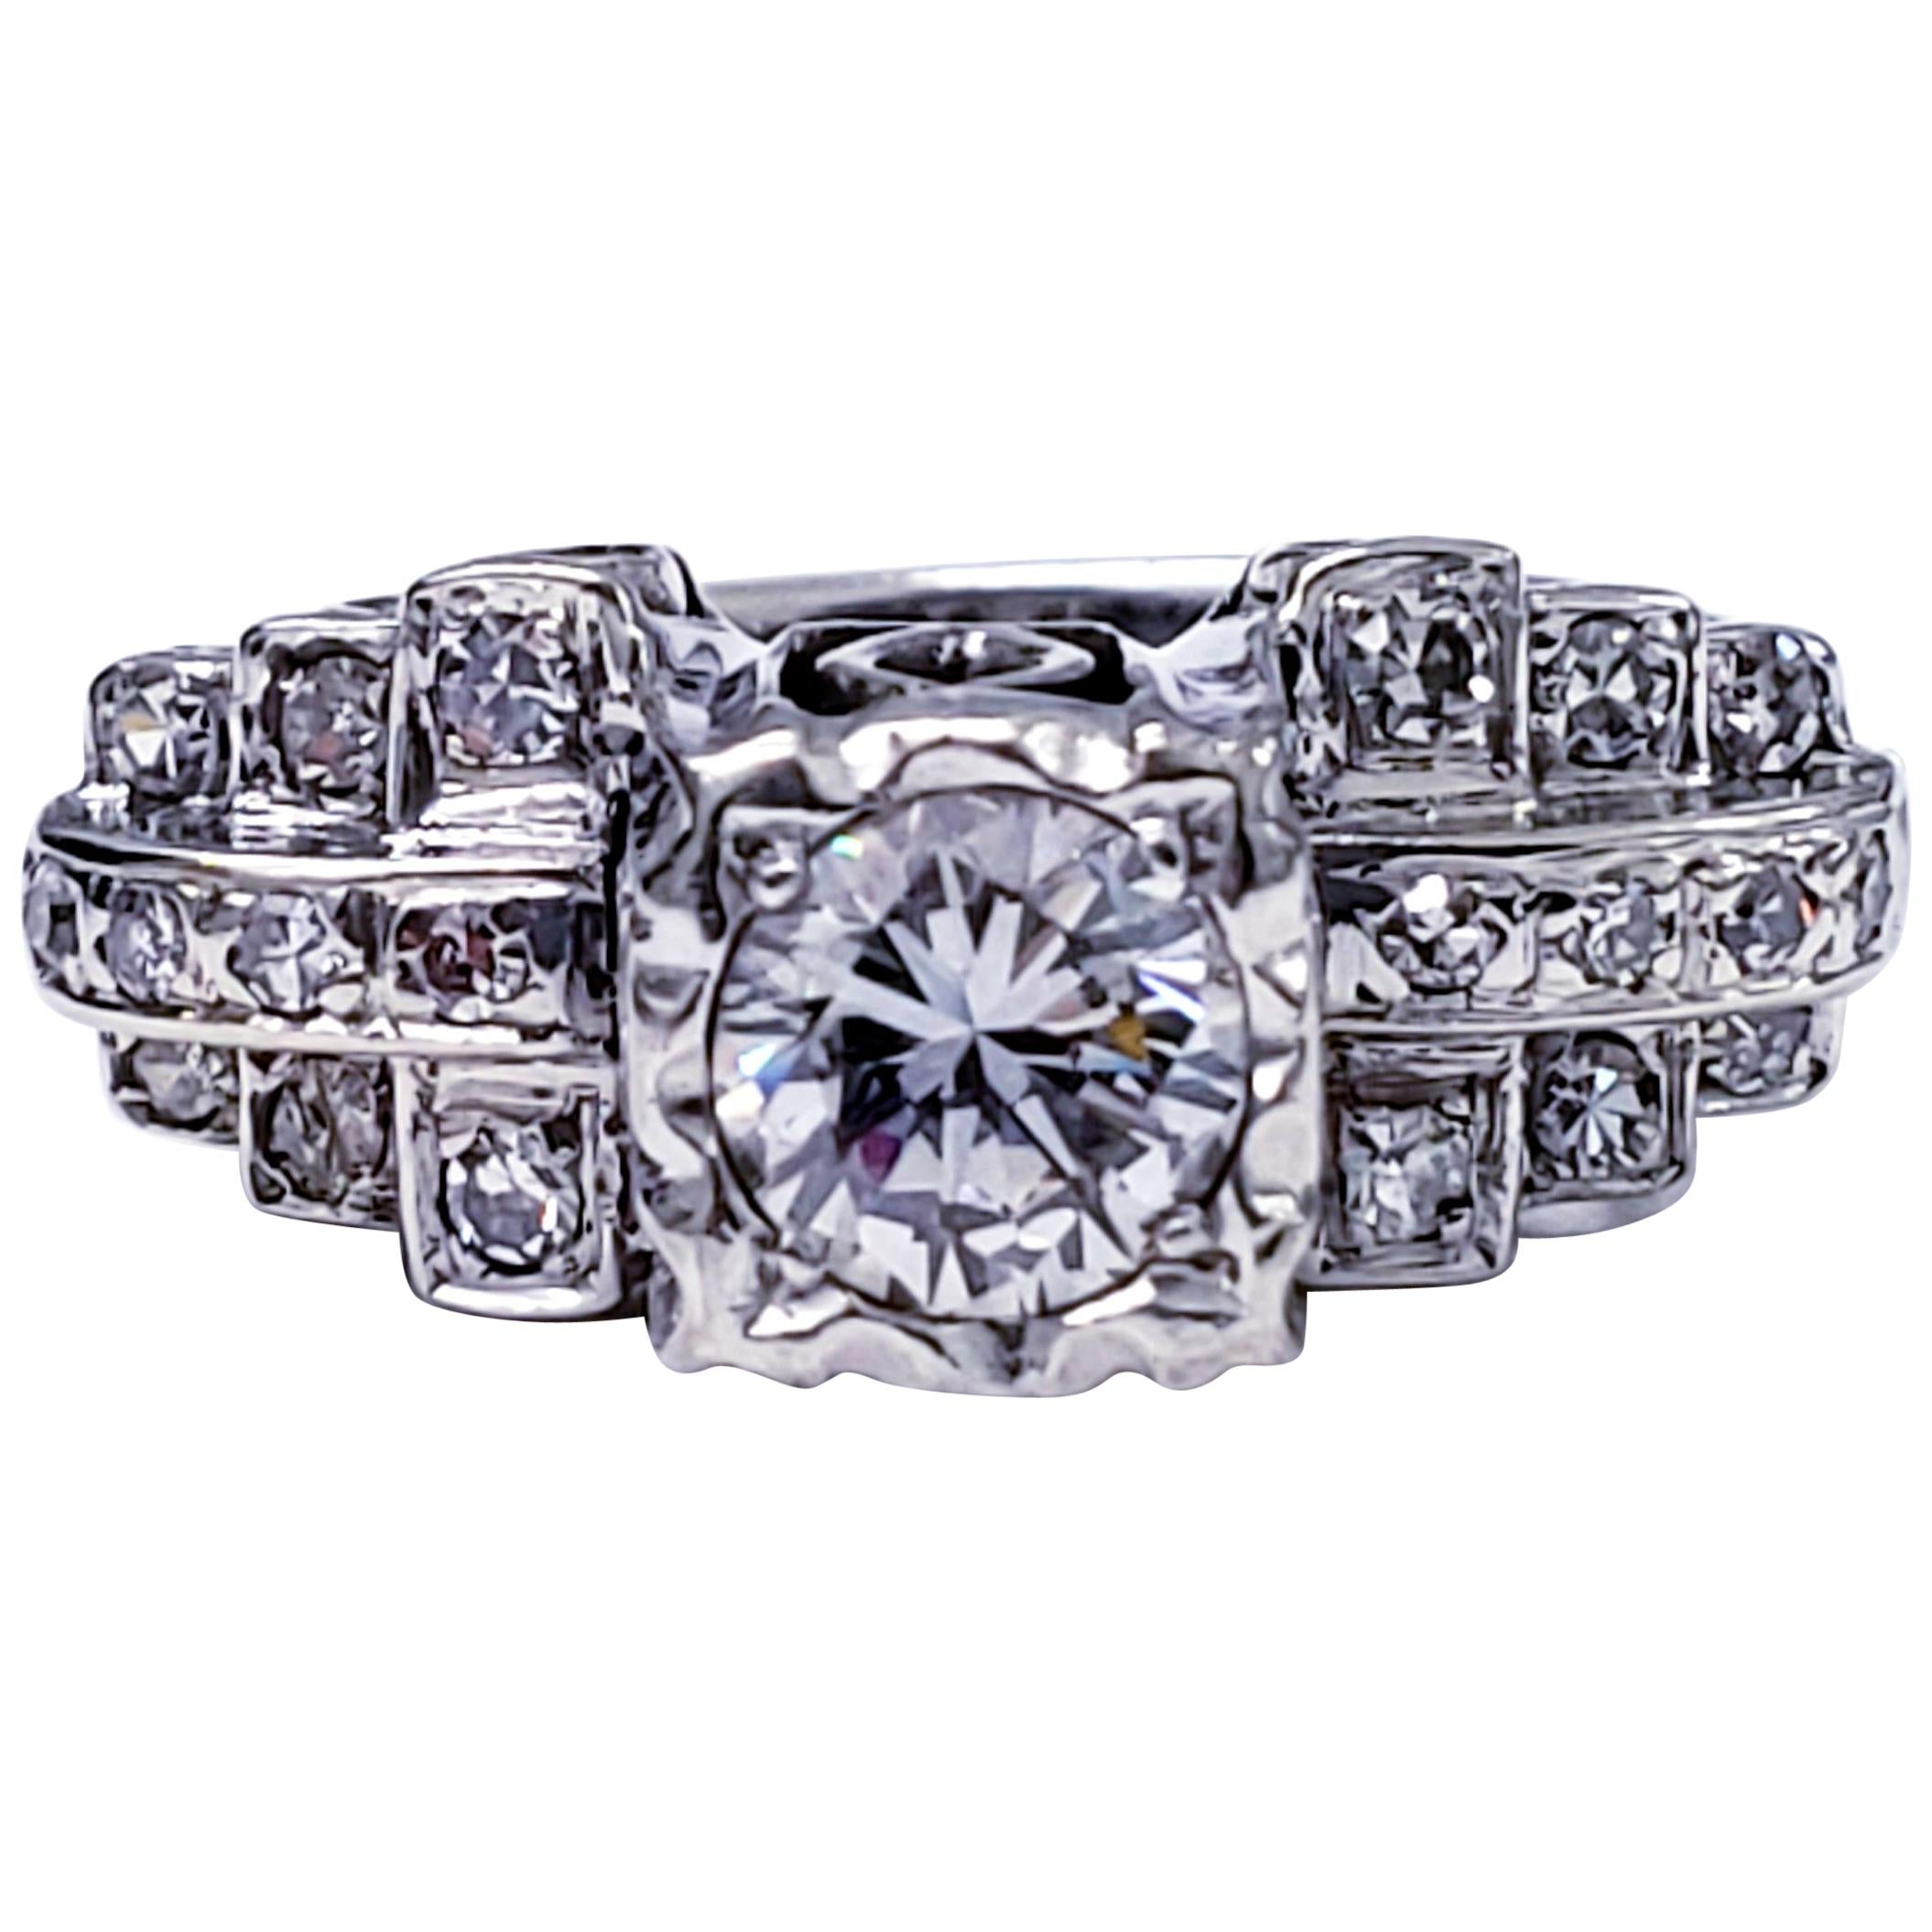 Antique Platinum 1.25 Carat Diamonds Wedding Ring